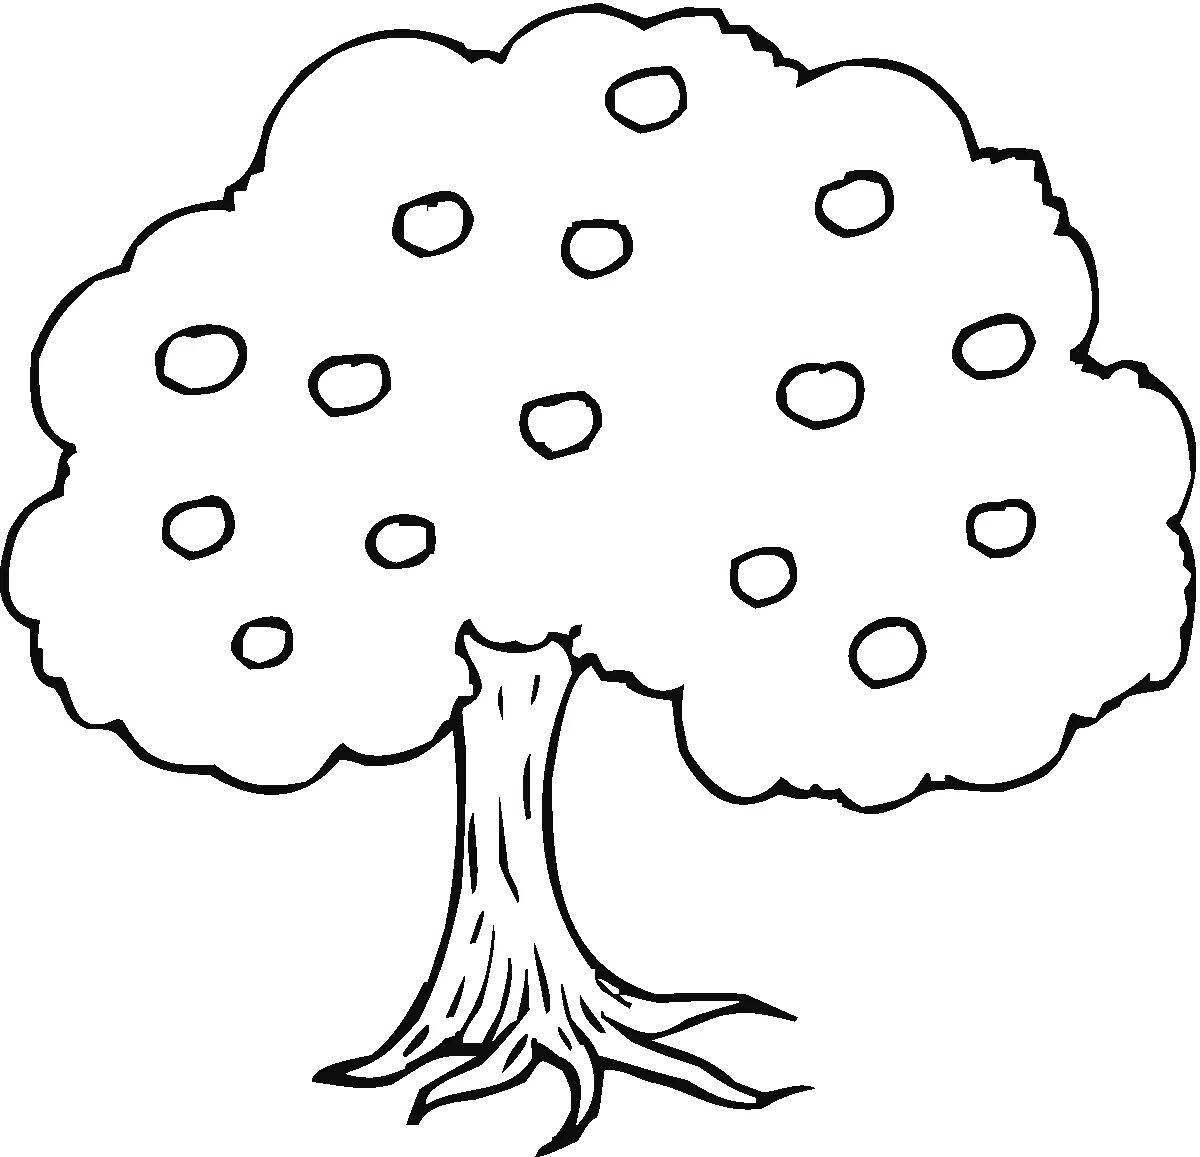 Увлекательная раскраска деревьев для детей 5-6 лет